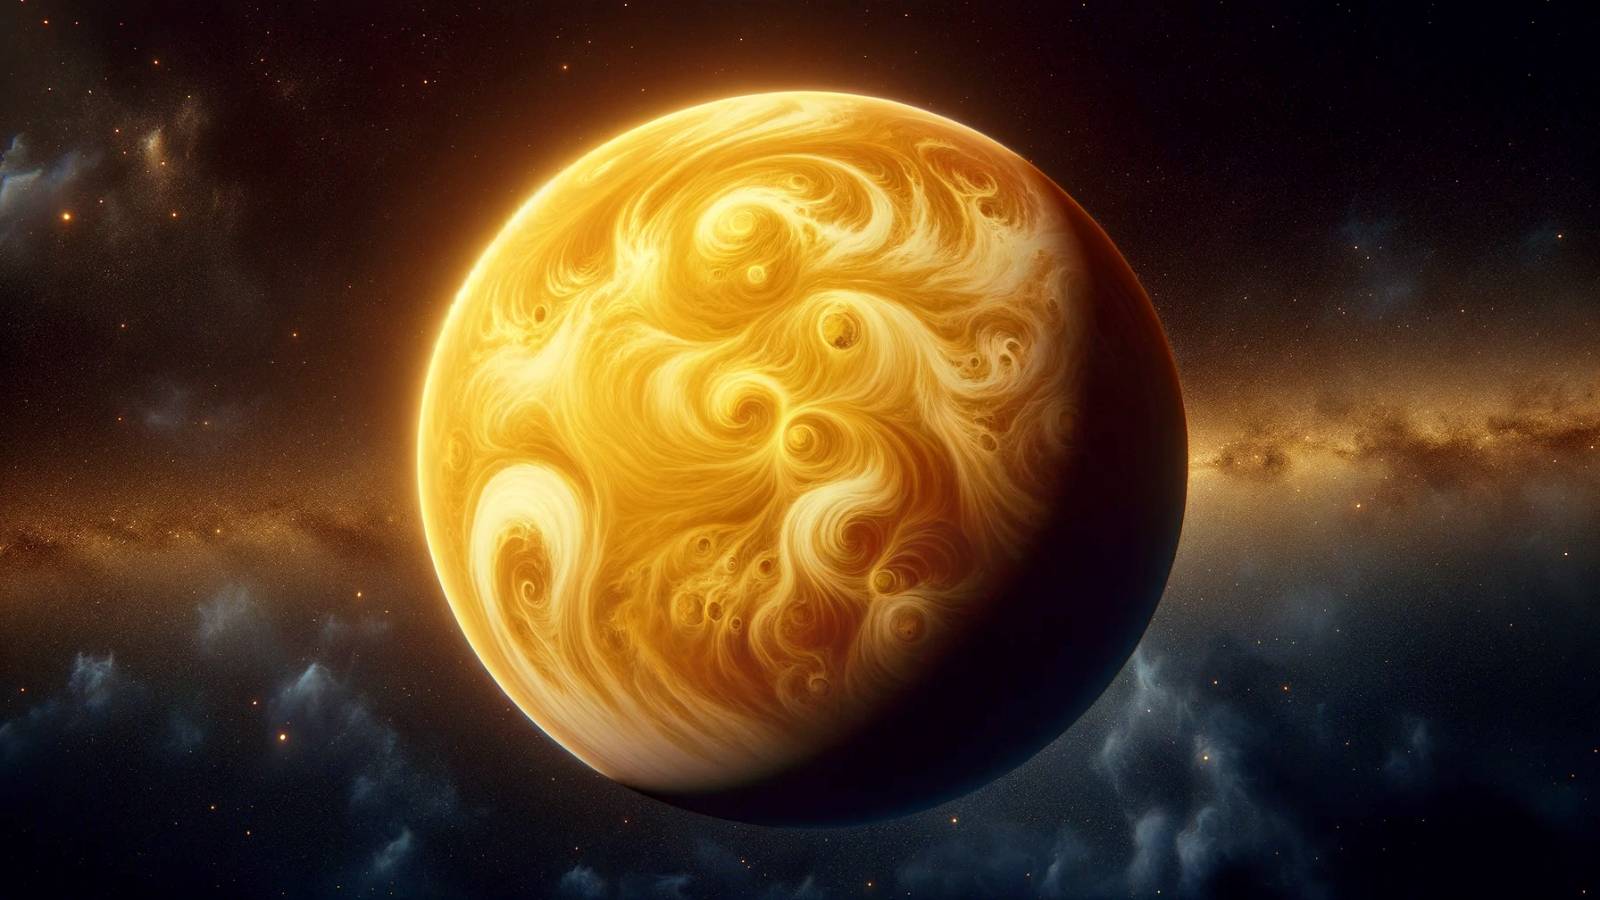 De planeet Venus heeft een koude atmosfeer